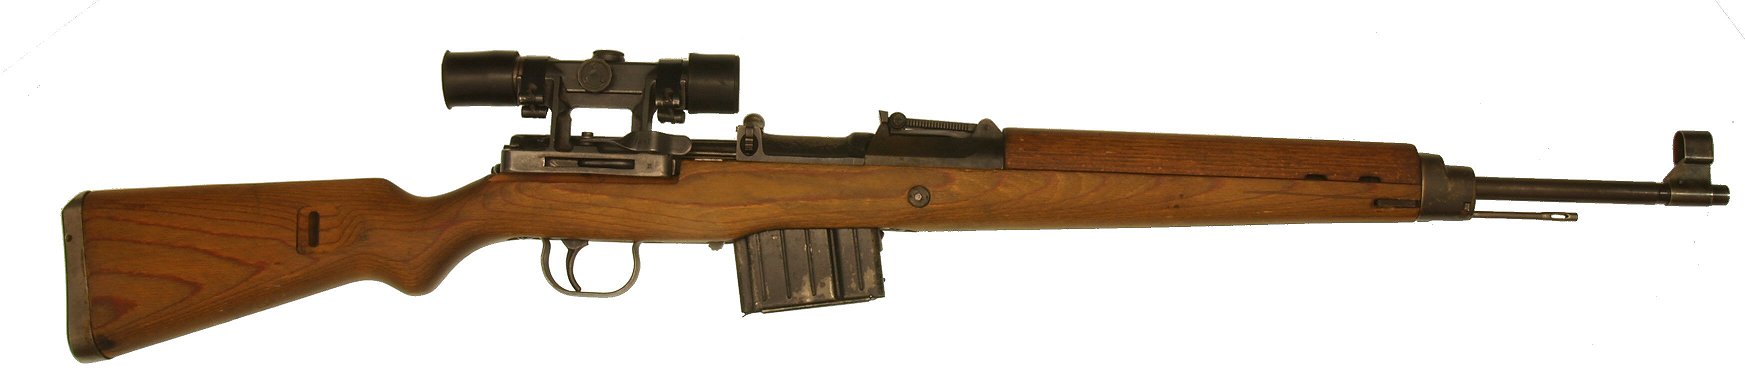 Gewehr43SR